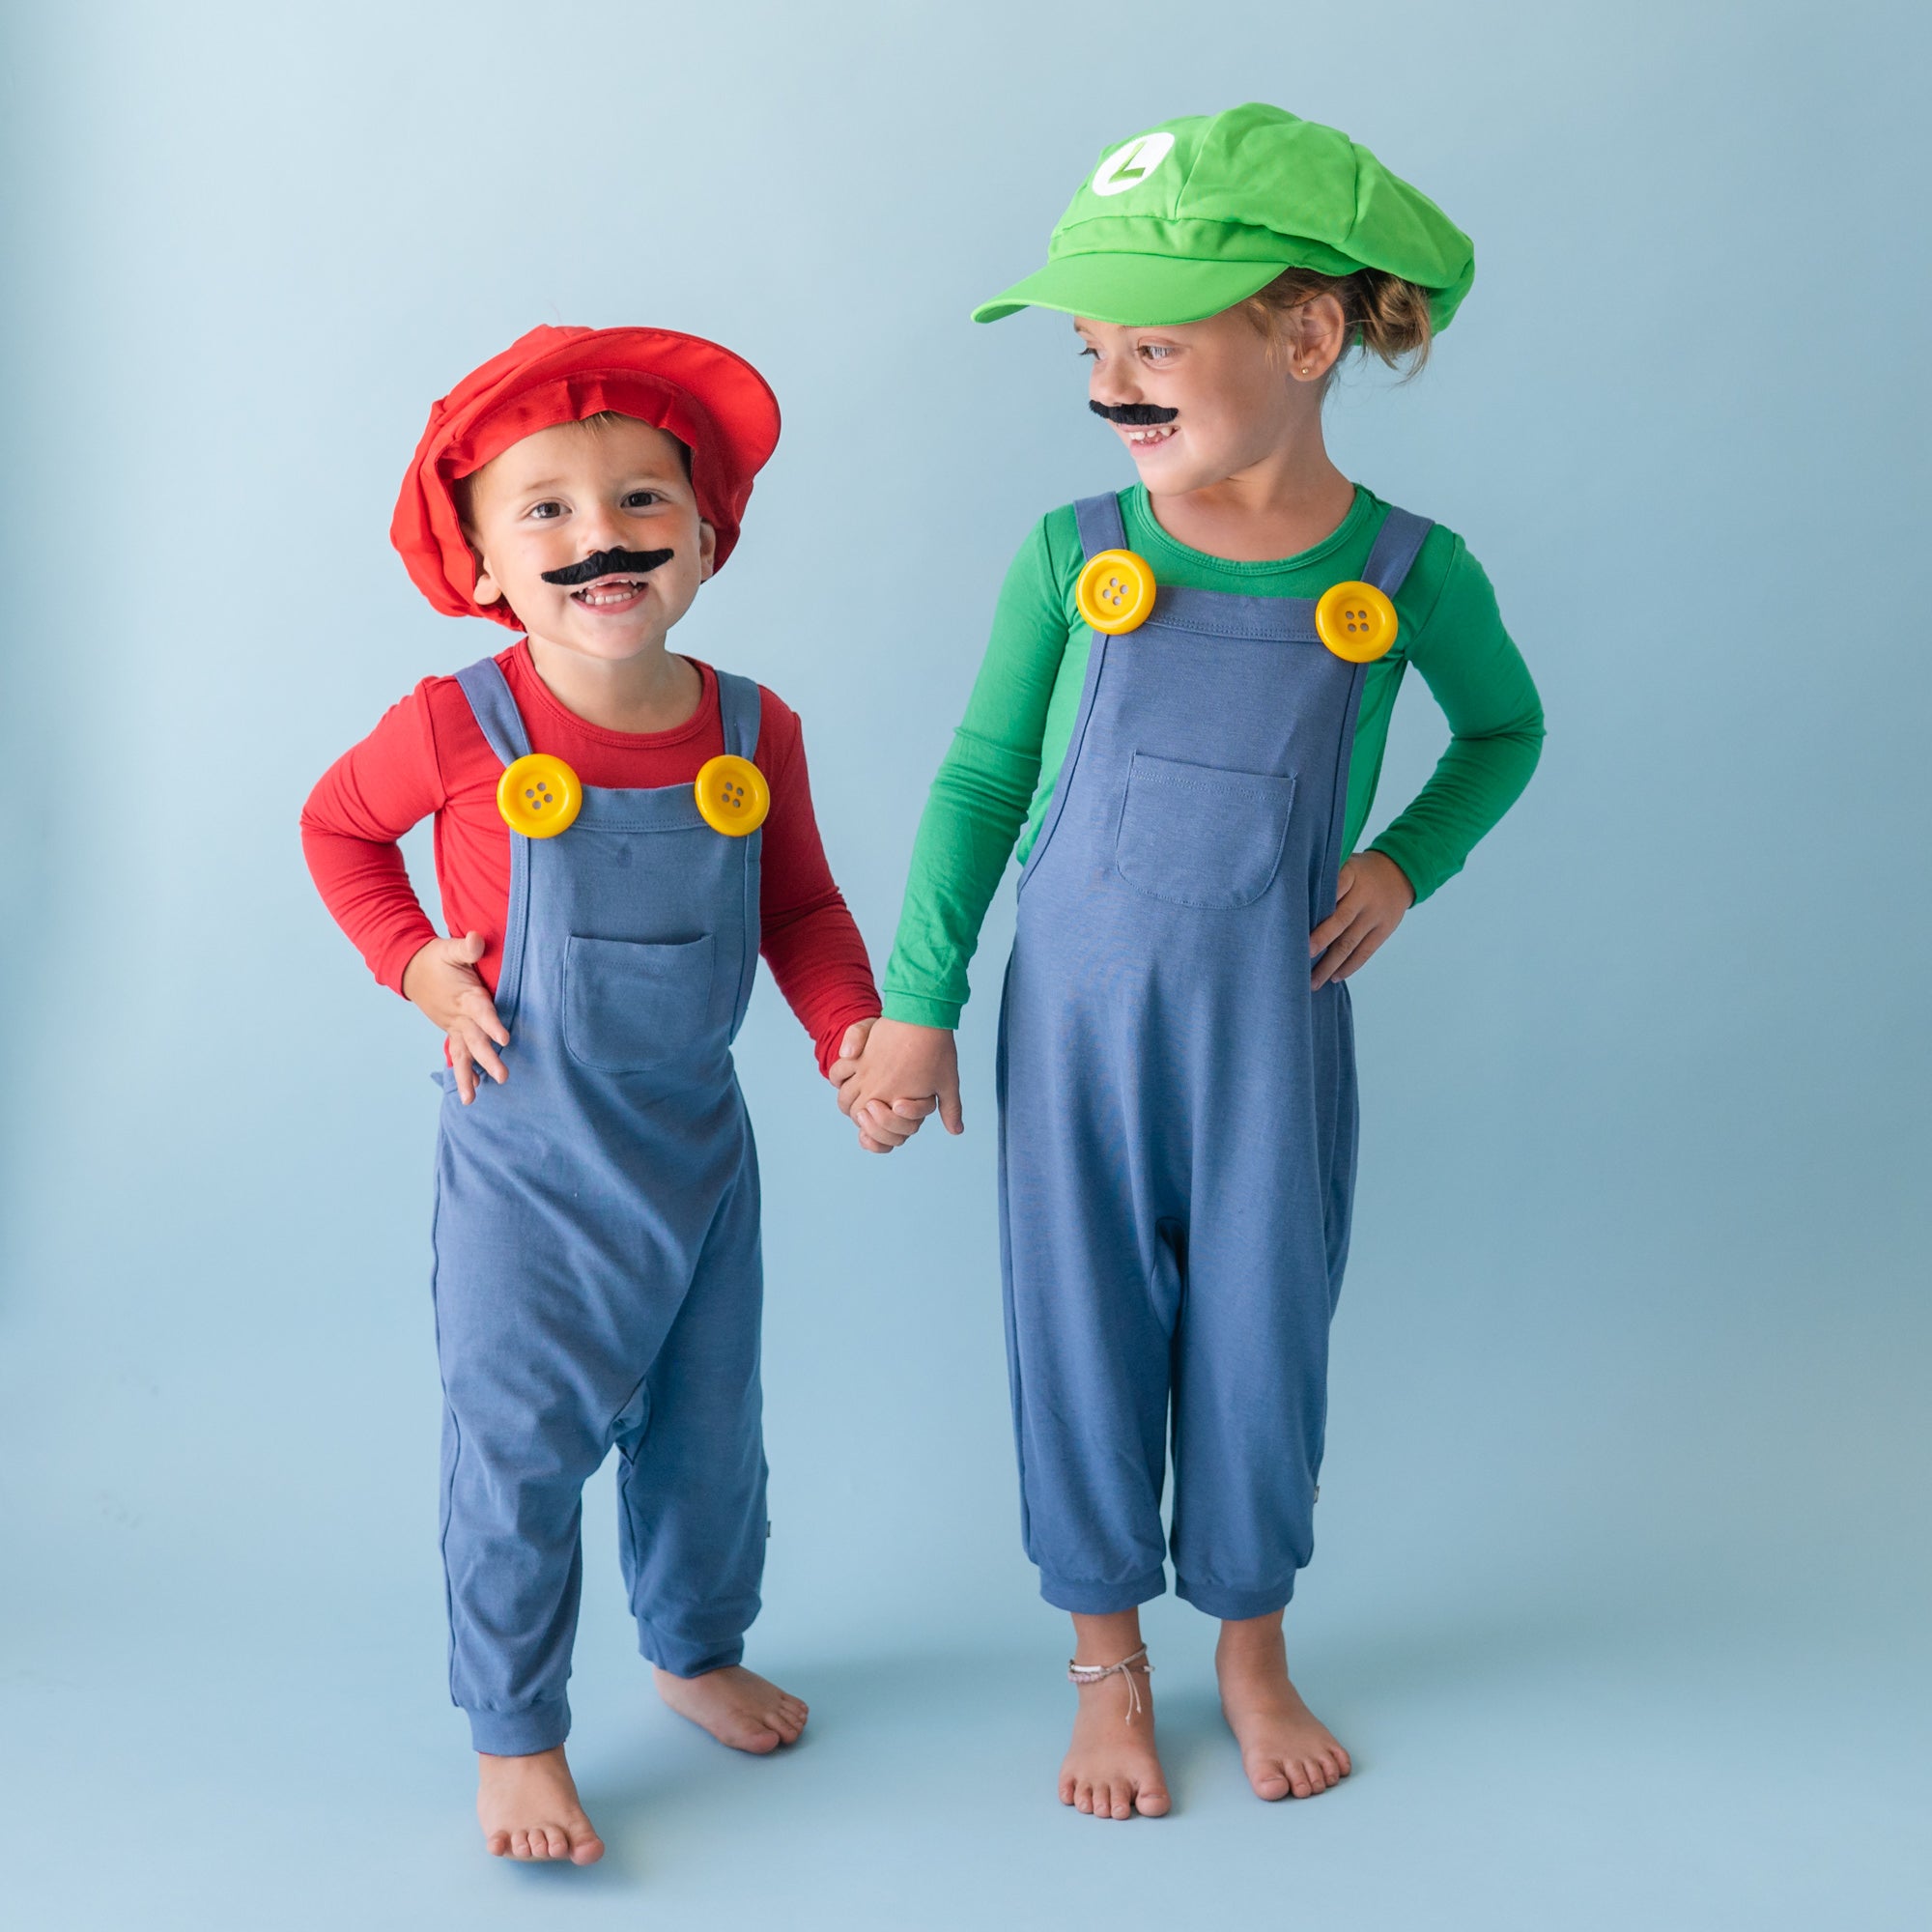 How To Make a DIY Mario Costume - 5 steps